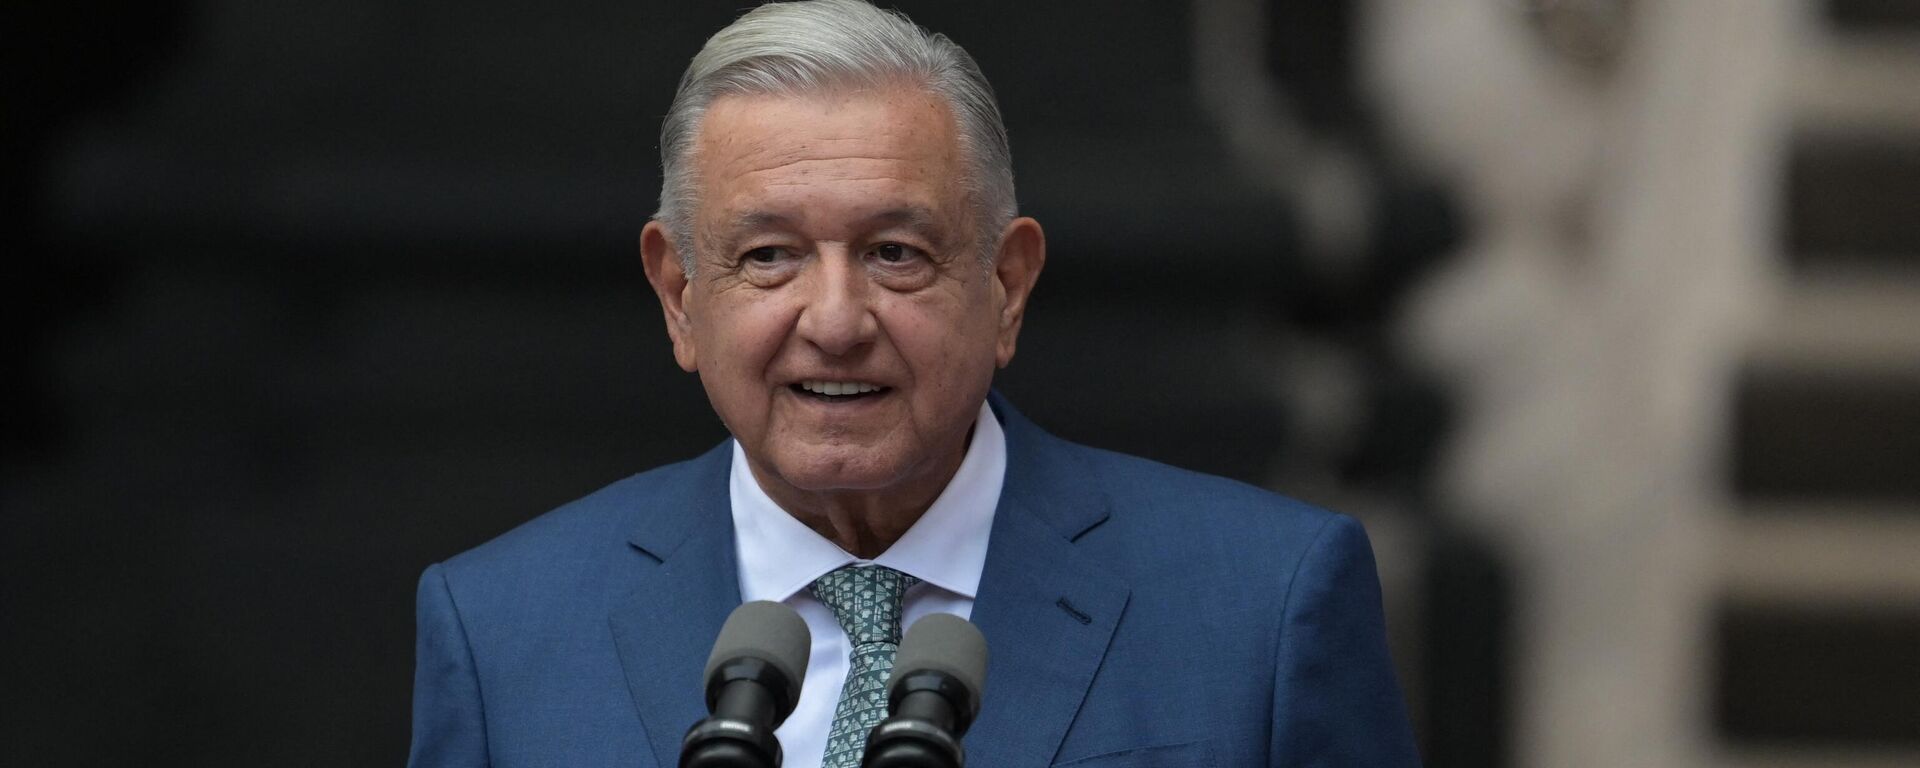 El presidente de México, Andrés Manuel López Obrador, dijo que en México hay más democracia que en EEUU. - Sputnik Mundo, 1920, 10.03.2023